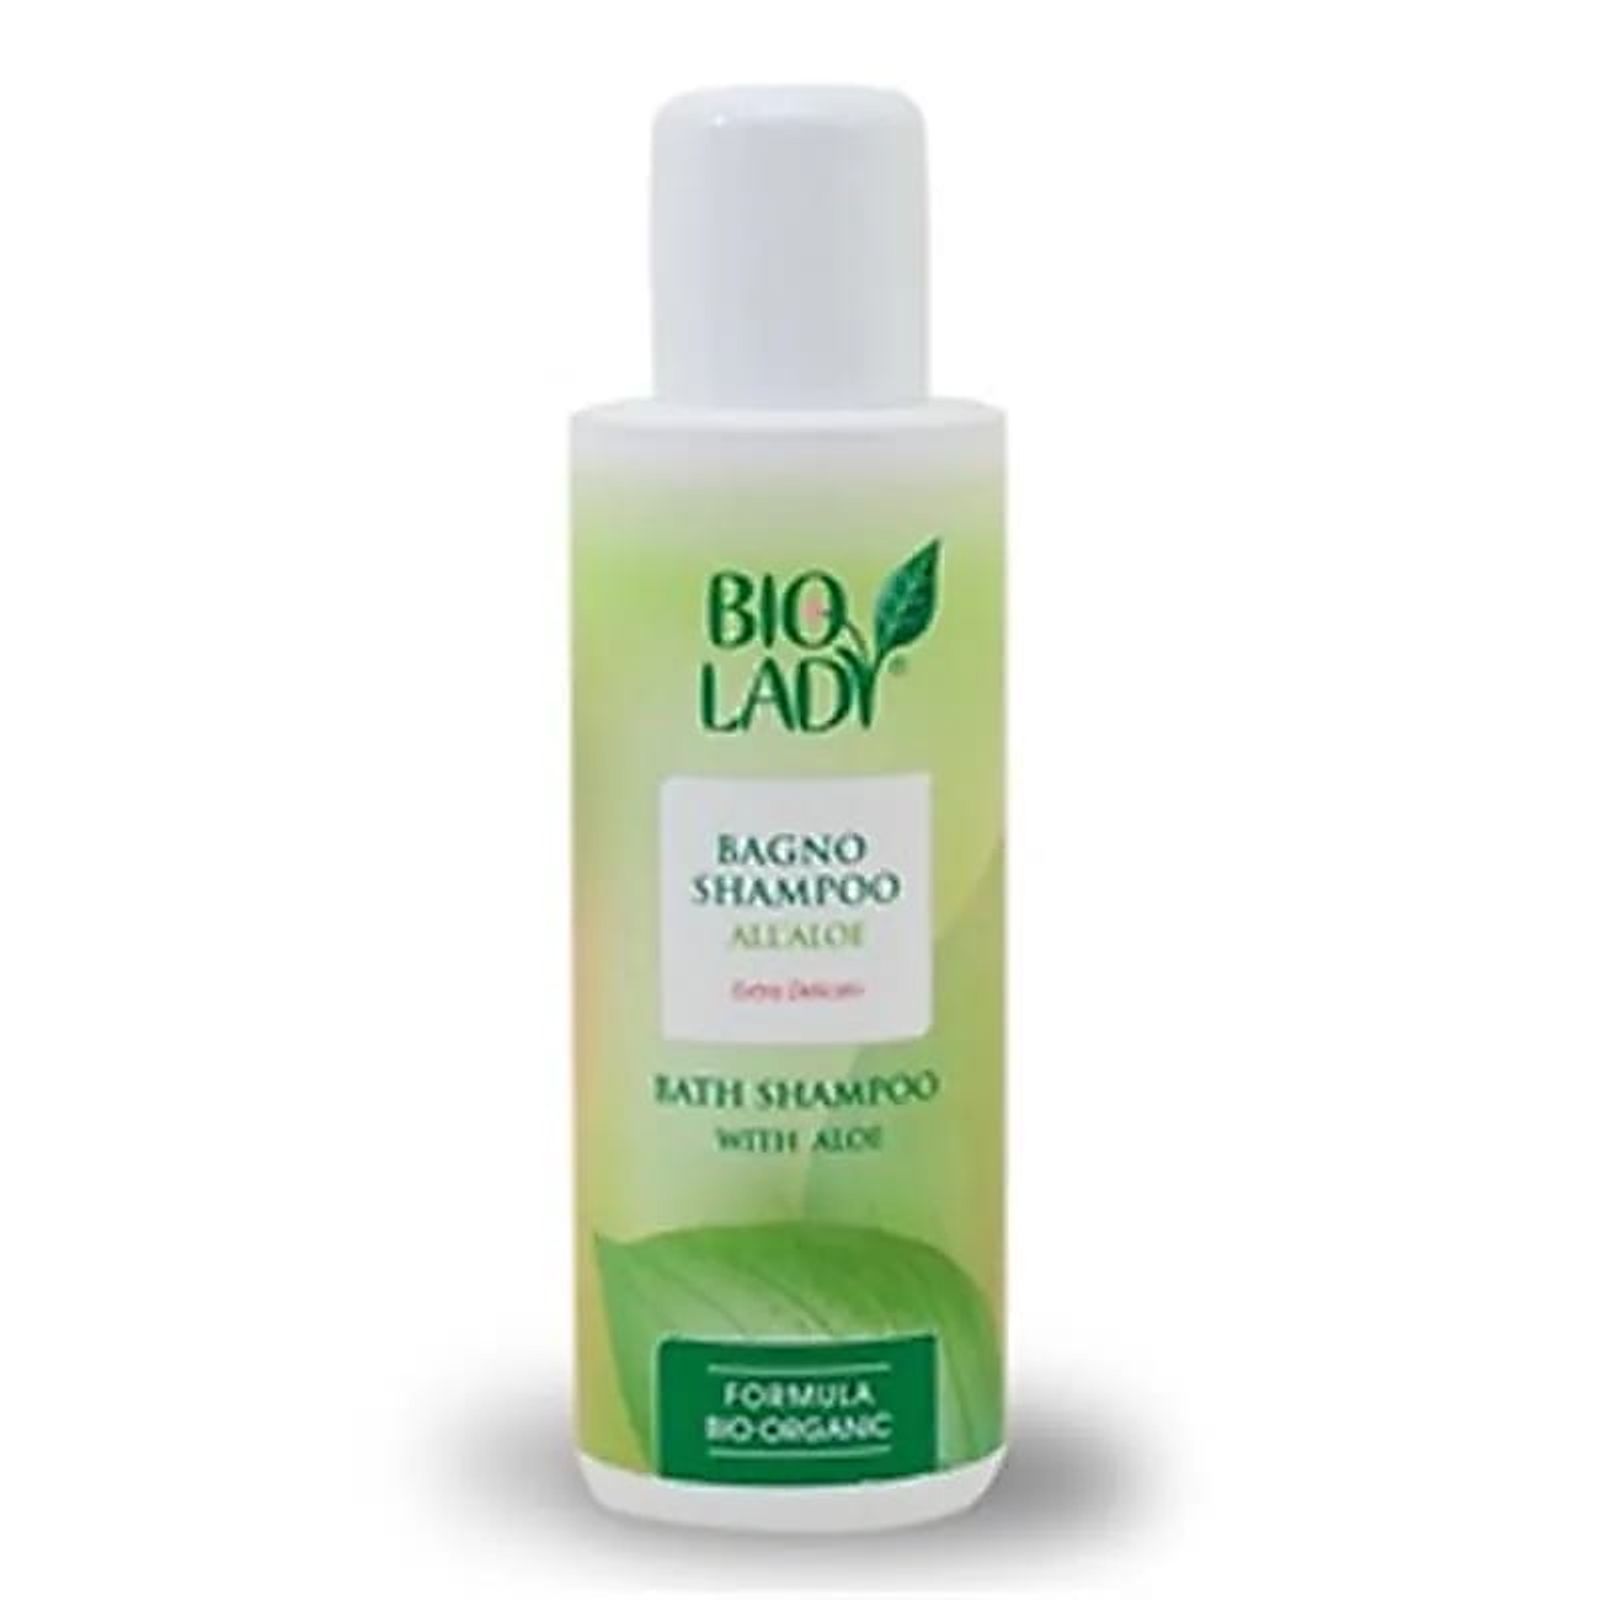 Bio Lady: Biologisches Shampoo mit Aloe -- 200 ml